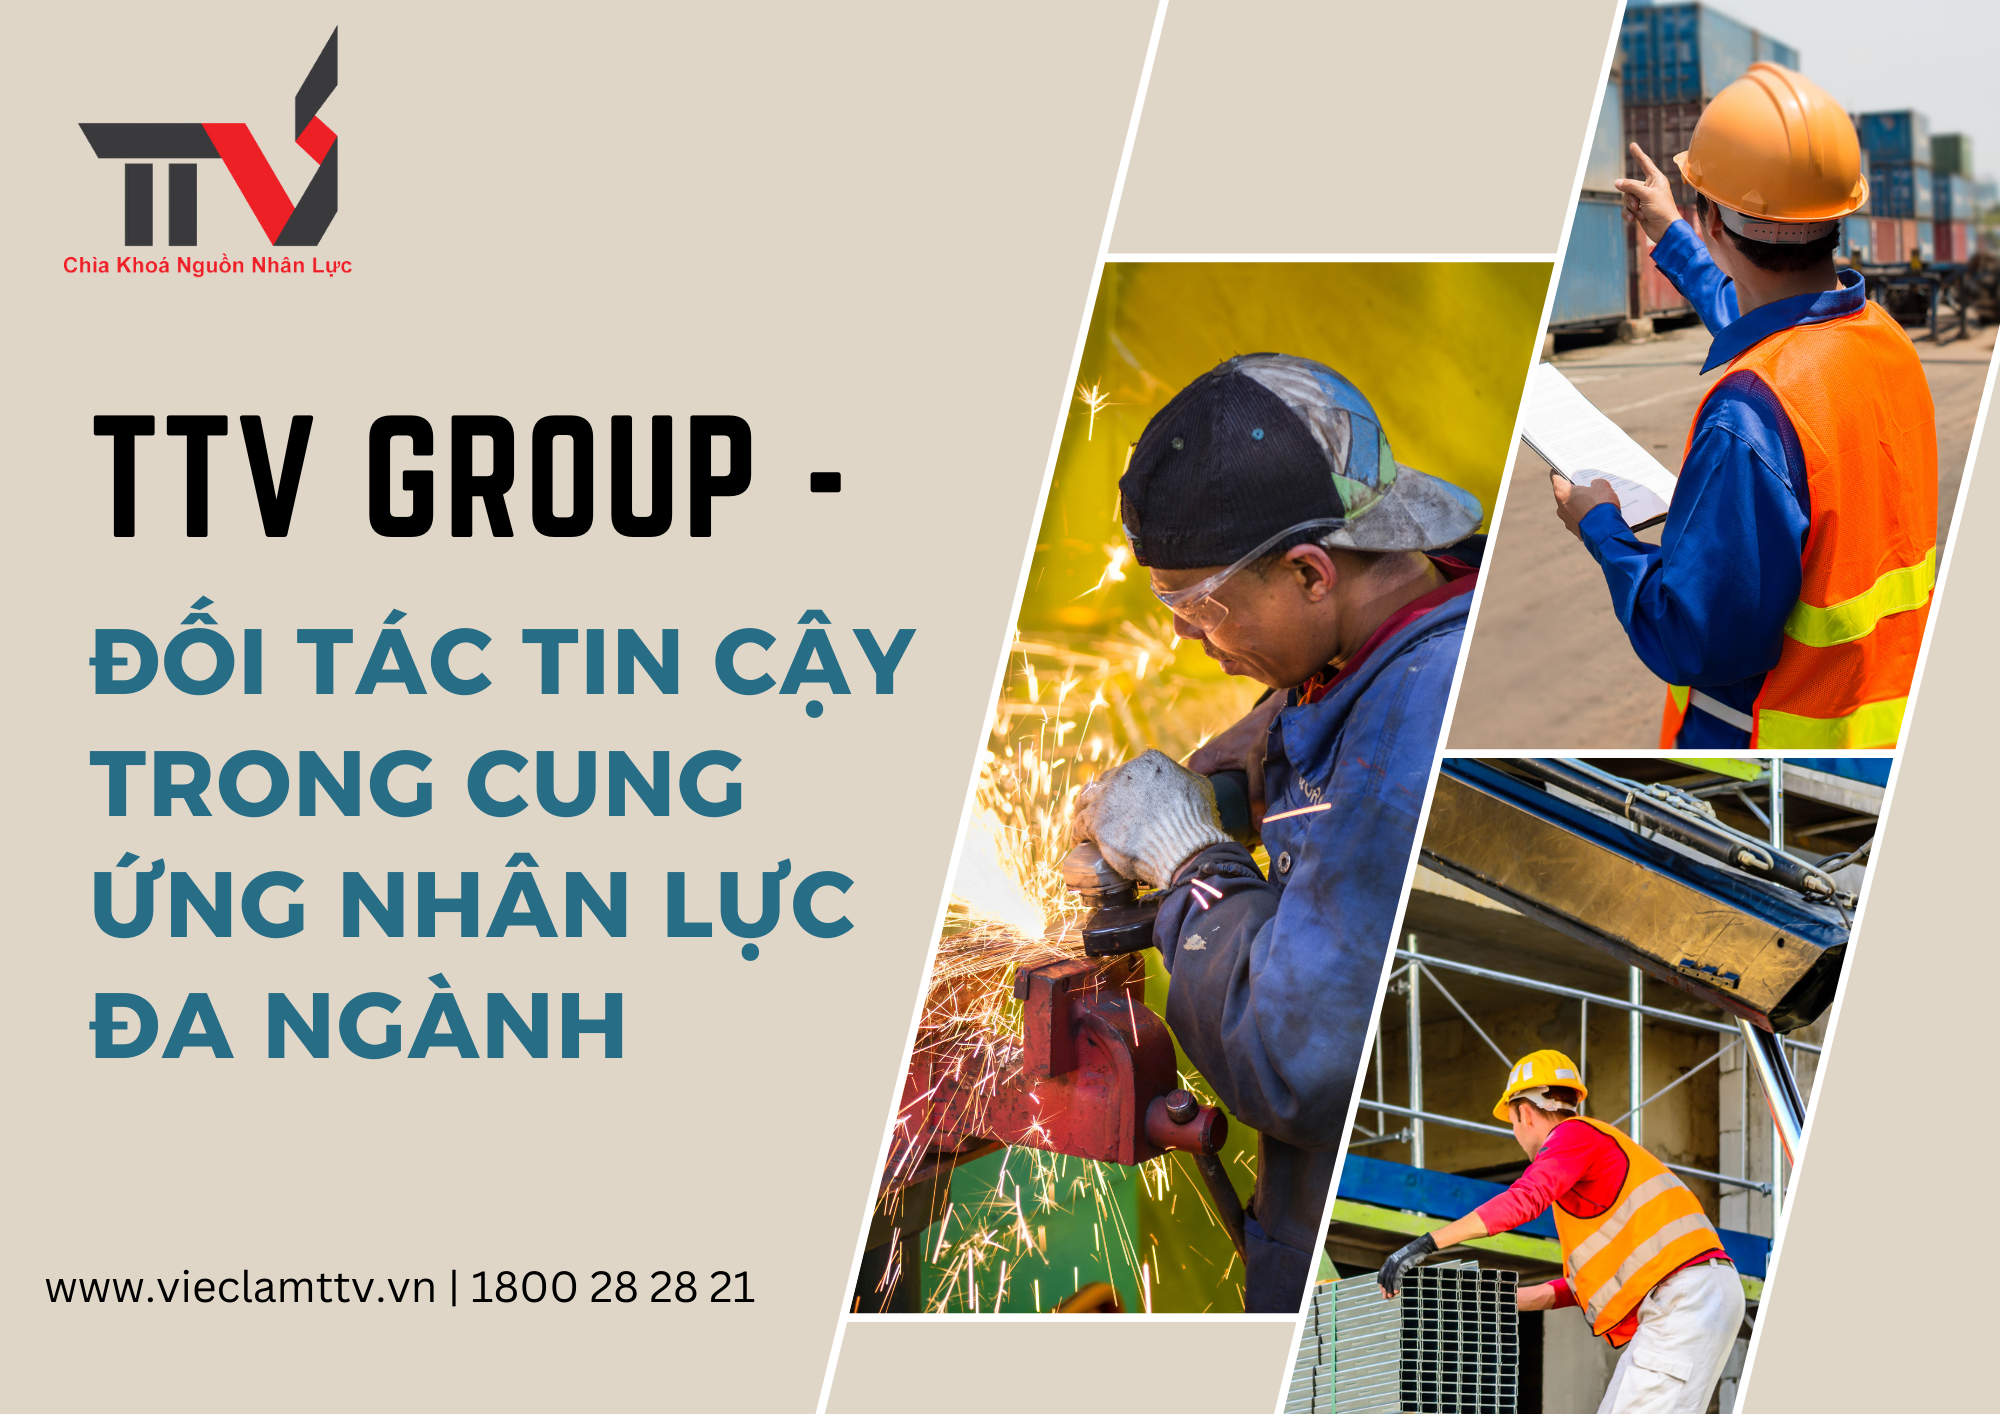 TTV Group - Đối tác tin cậy trong cung ứng nhân lực đa ngành tại khu vực Hồ Chí Minh, Bình Dương và Đồng Nai